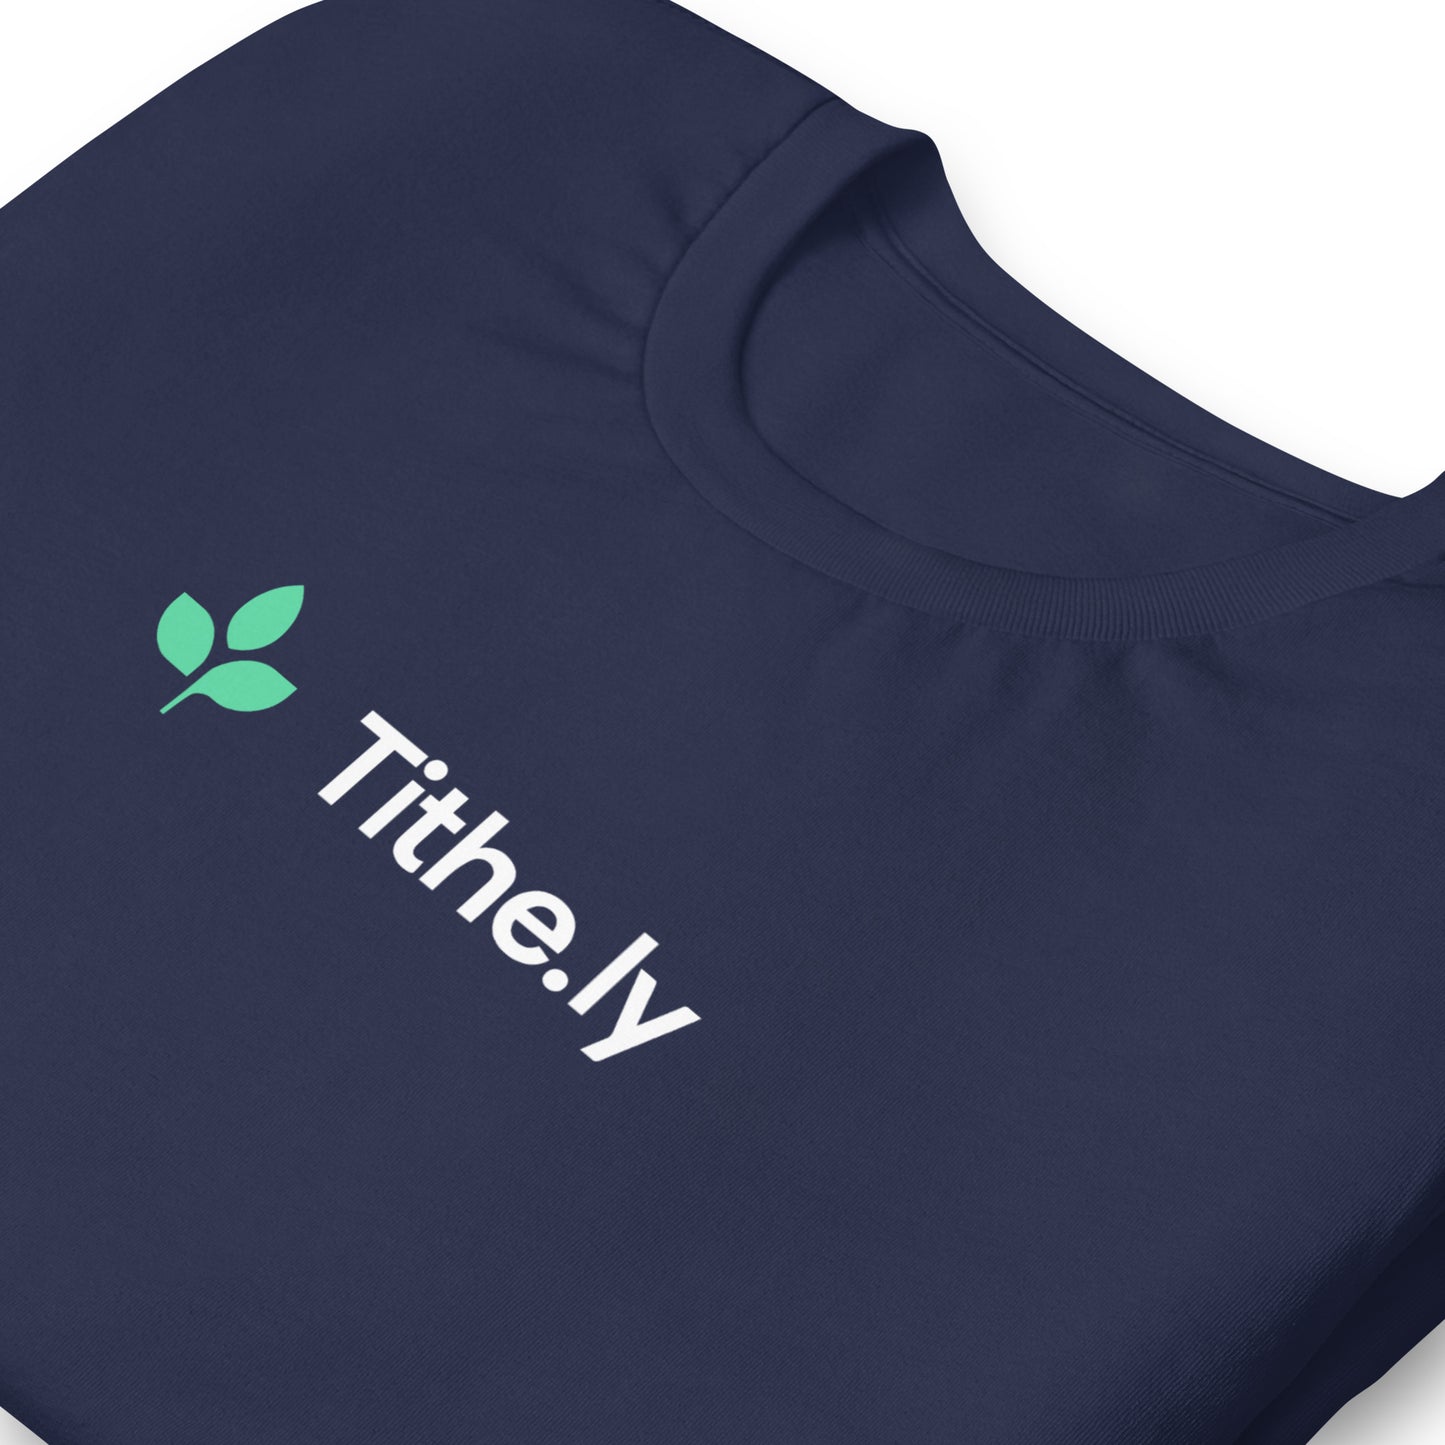 Tithely Unisex T-Shirt